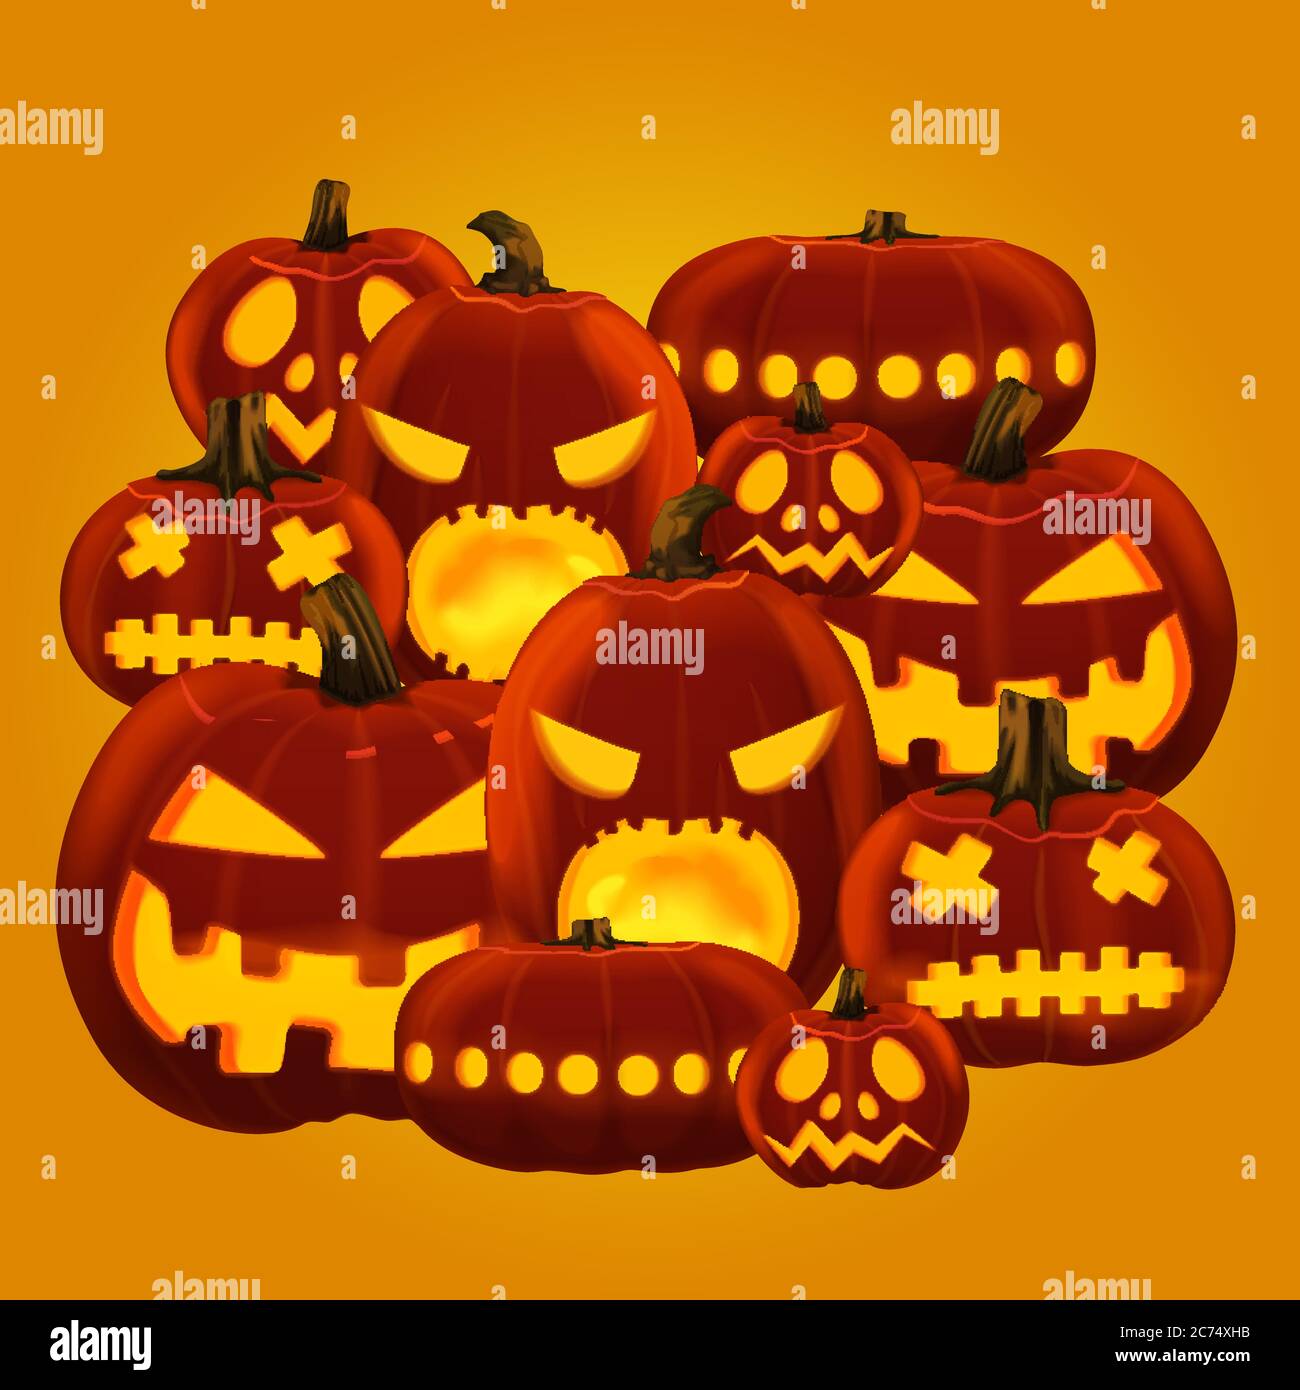 Illustrazione vettoriale di lanterne horror di zucca di Halloween con facce diverse scolpite Illustrazione Vettoriale